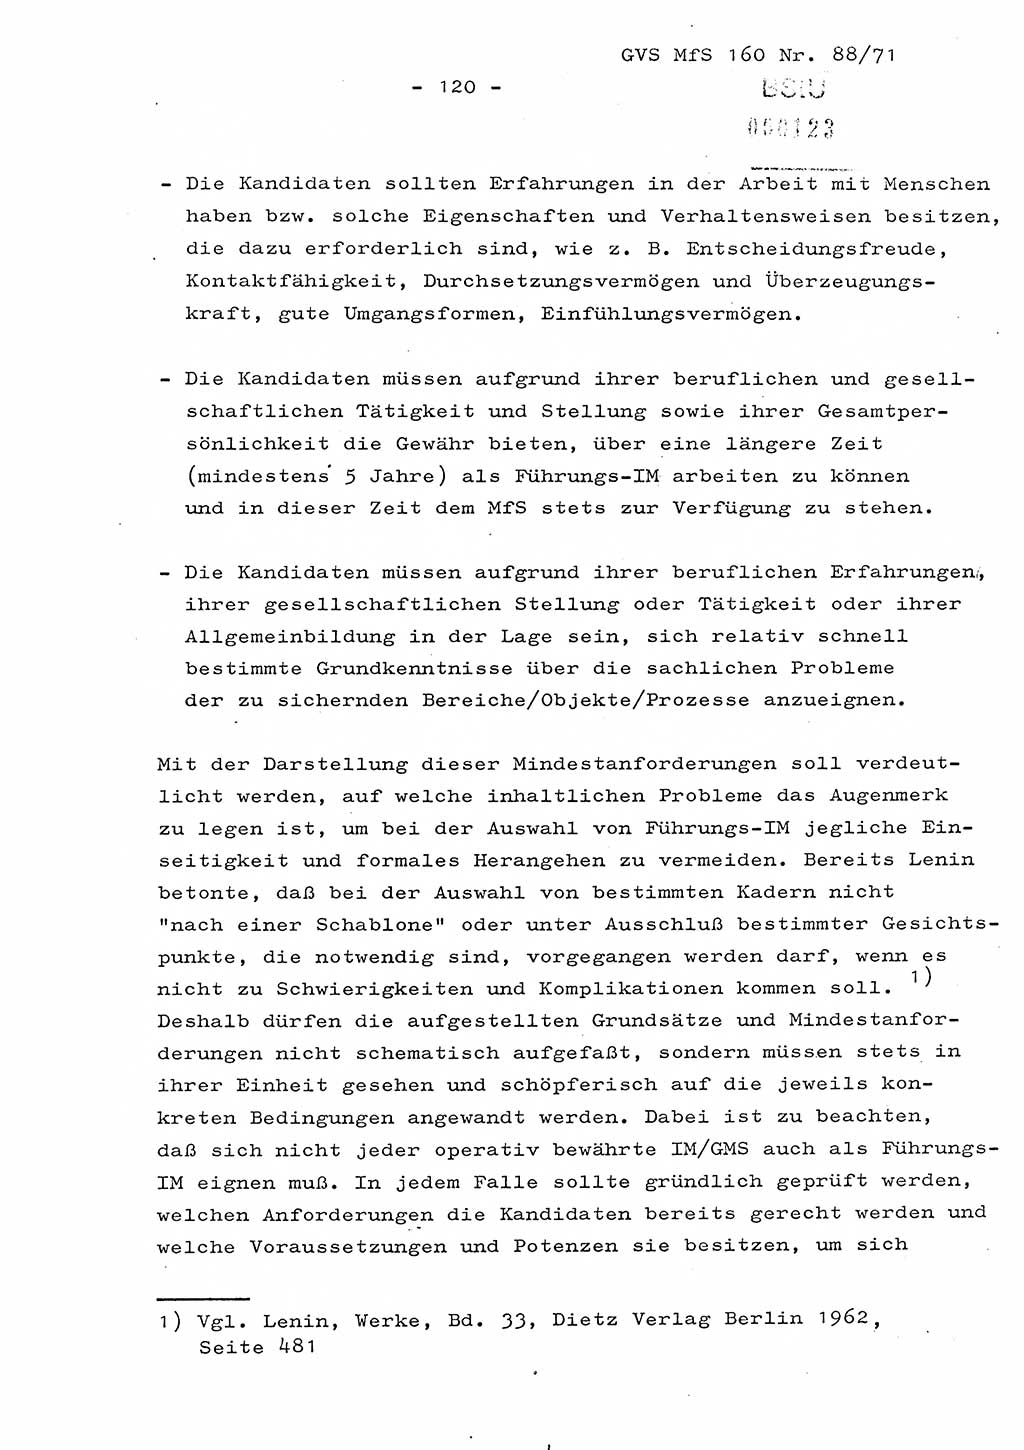 Dissertation Oberstleutnant Josef Schwarz (BV Schwerin), Major Fritz Amm (JHS), Hauptmann Peter Gräßler (JHS), Ministerium für Staatssicherheit (MfS) [Deutsche Demokratische Republik (DDR)], Juristische Hochschule (JHS), Geheime Verschlußsache (GVS) 160-88/71, Potsdam 1972, Seite 120 (Diss. MfS DDR JHS GVS 160-88/71 1972, S. 120)